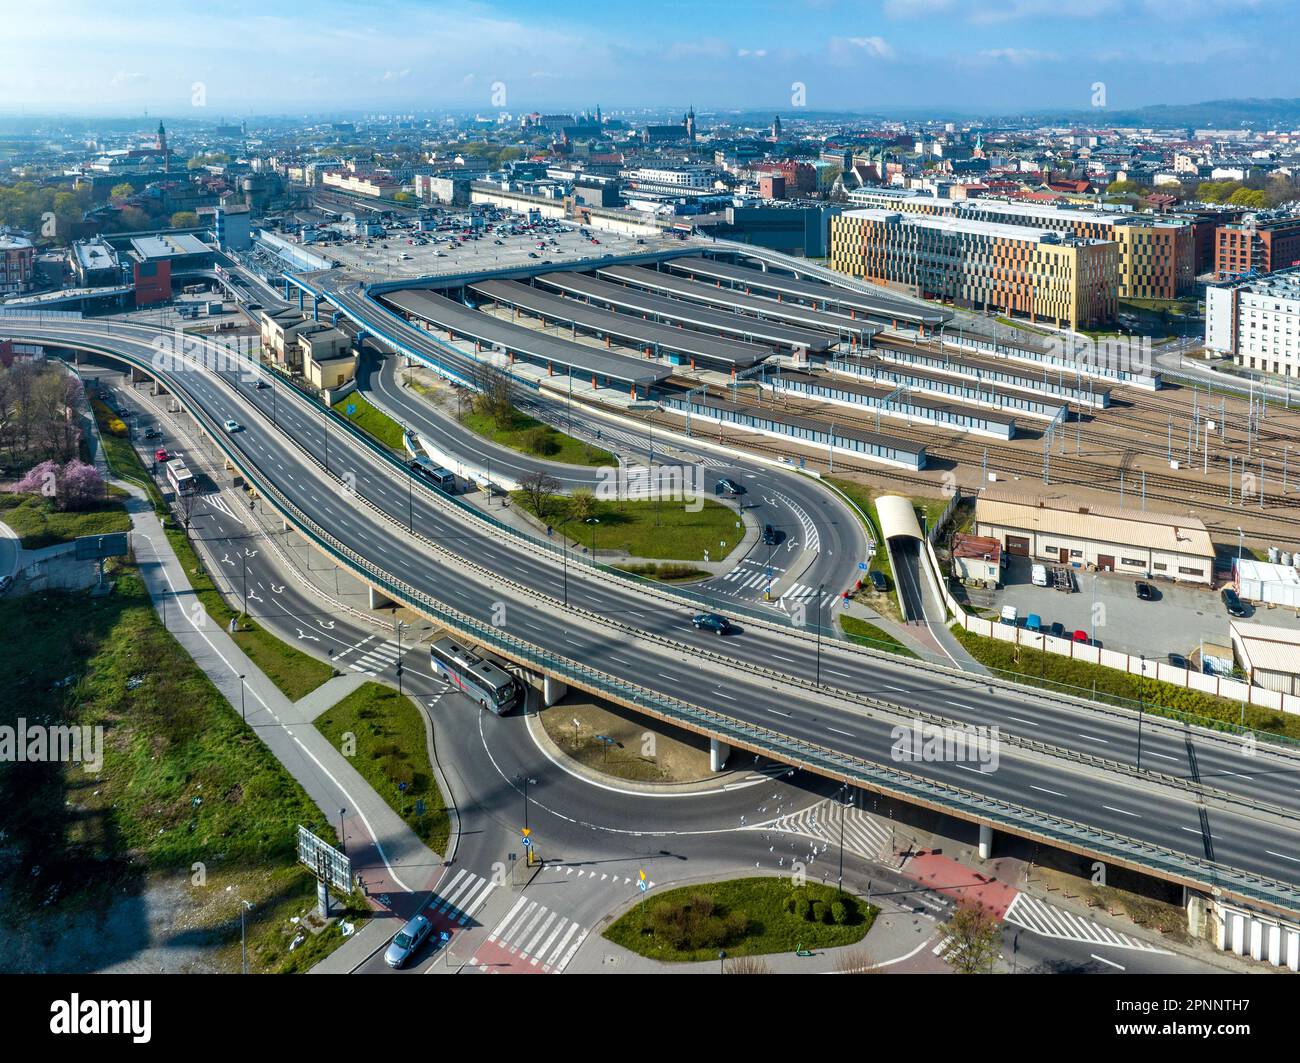 Krakau, Polen. Stadtbild mit Hauptbahnhof und großem Parkplatz auf dem Dach. Erhöhte Stadtautobahn mit Kreuzungen, Drehkreuzen und Rampen. Alter Abschleppwagen Stockfoto